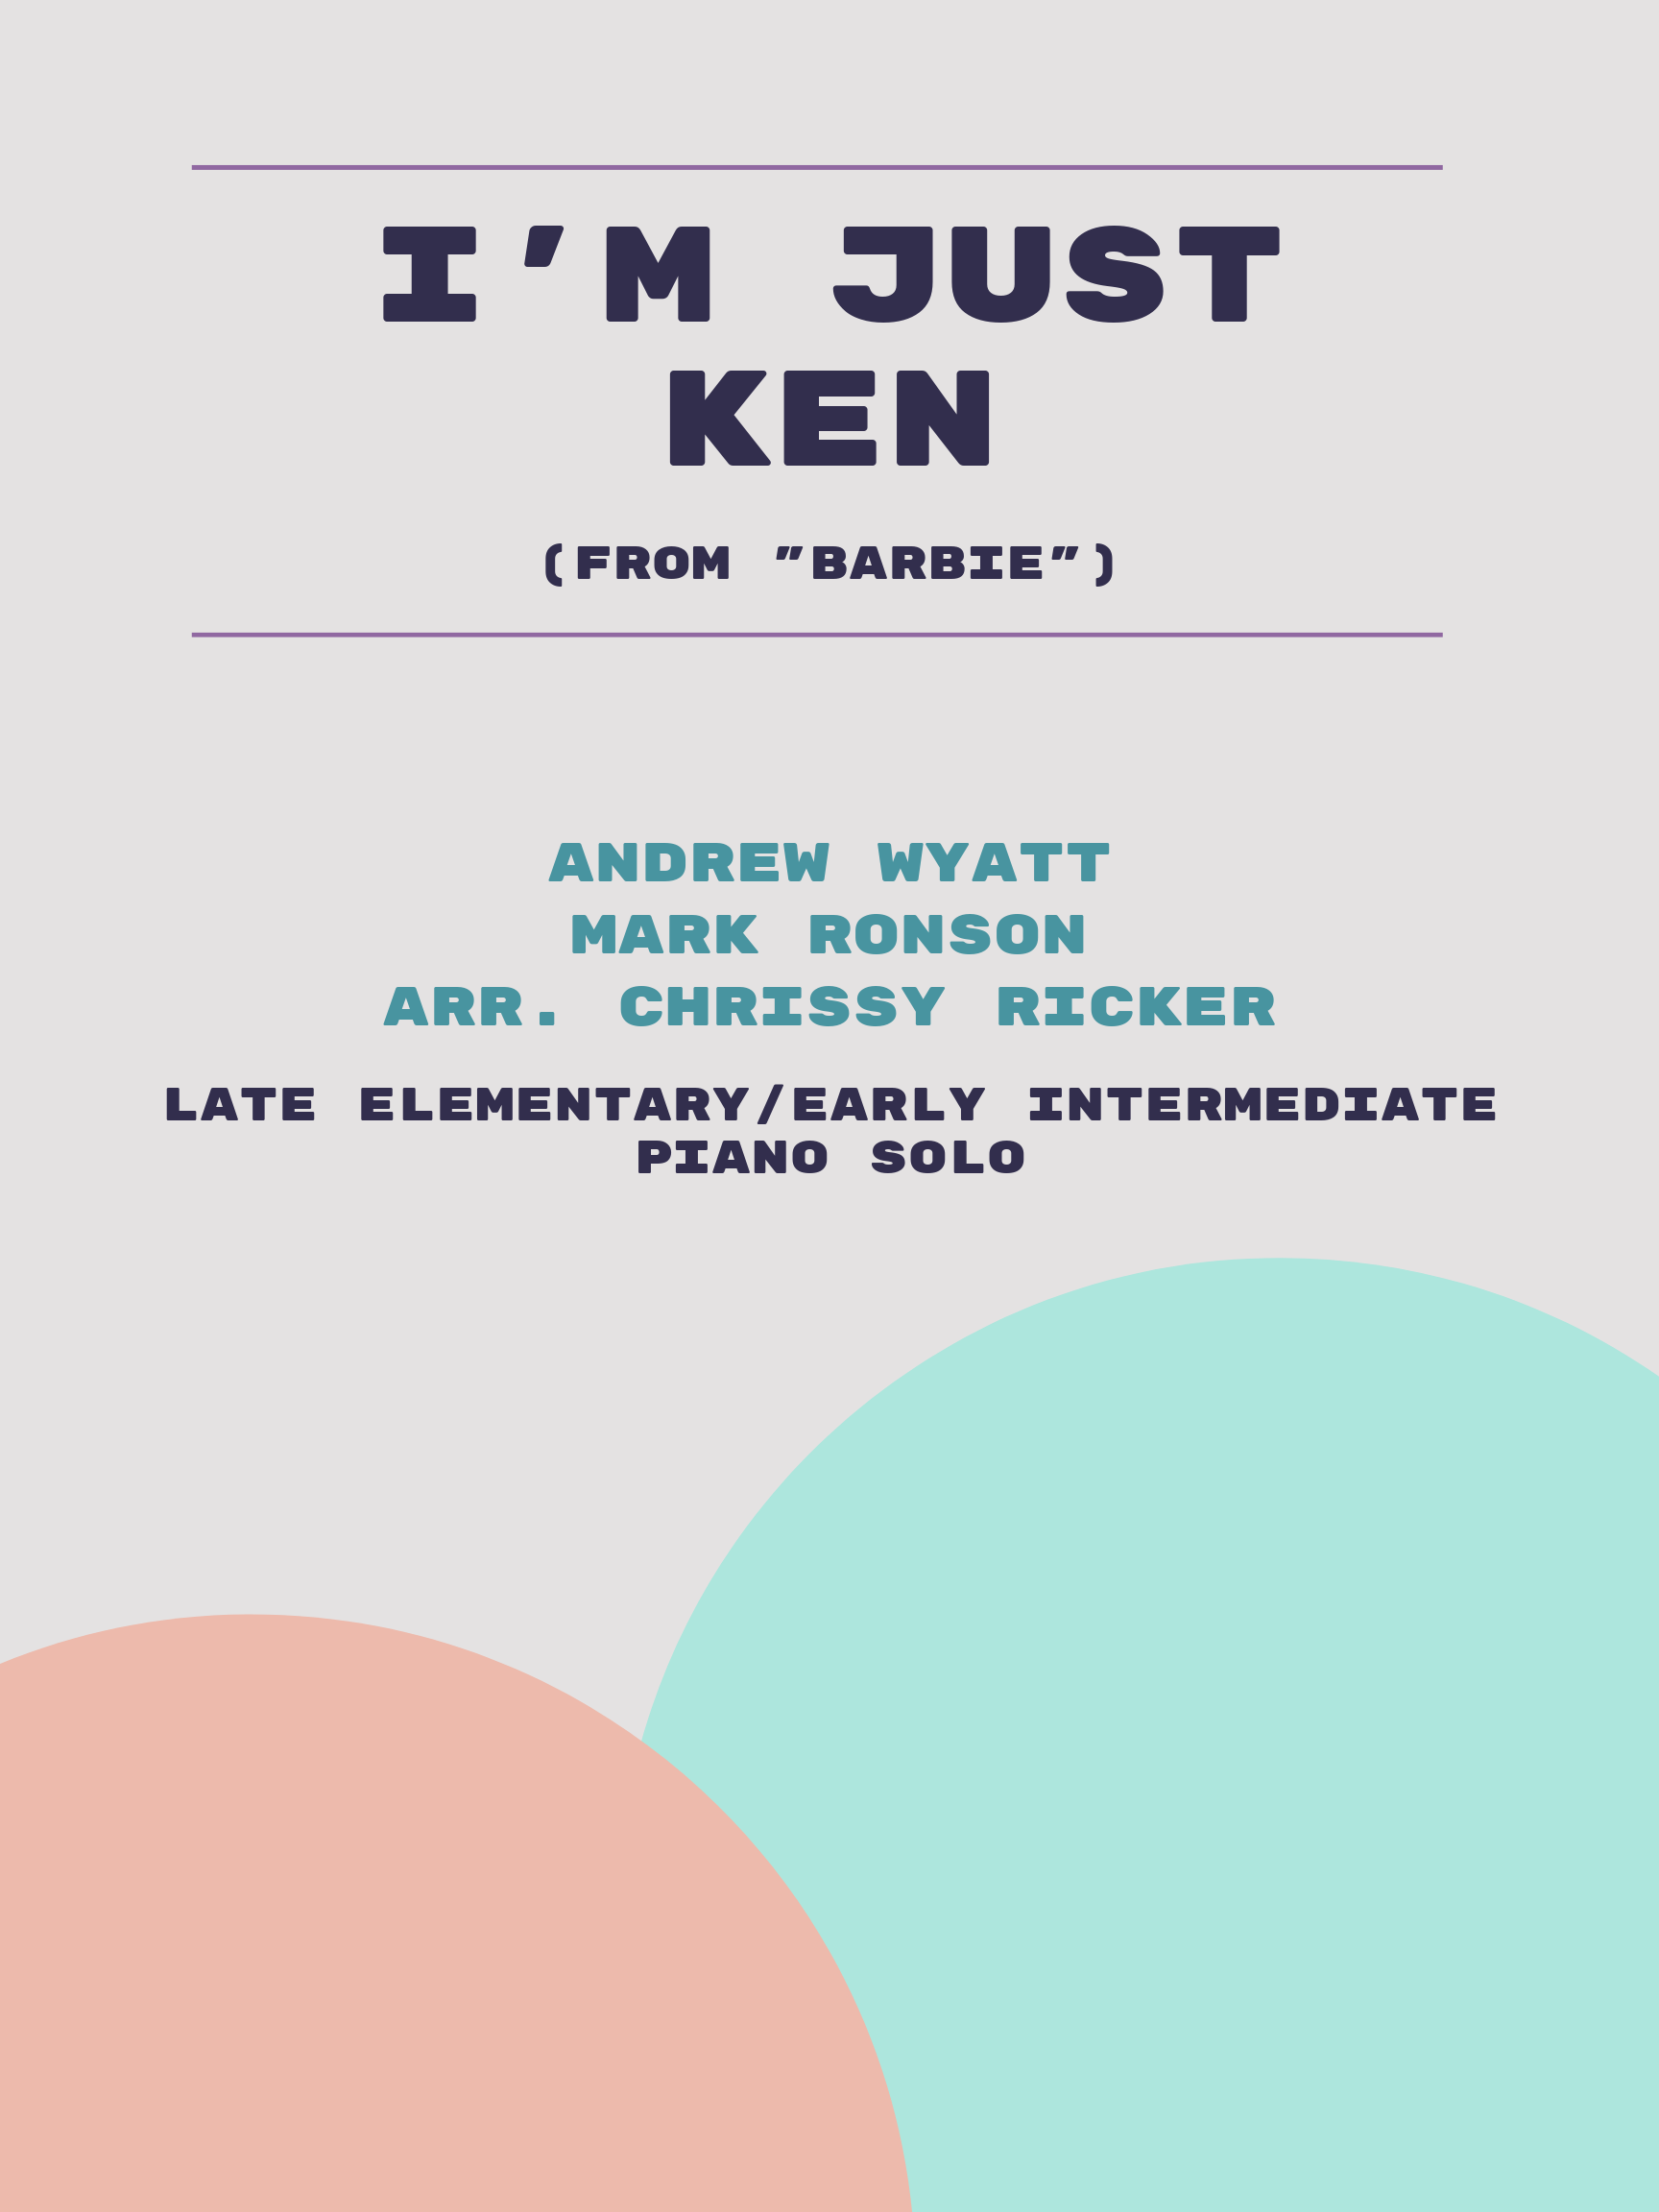 I'm Just Ken by Andrew Wyatt, Mark Ronson